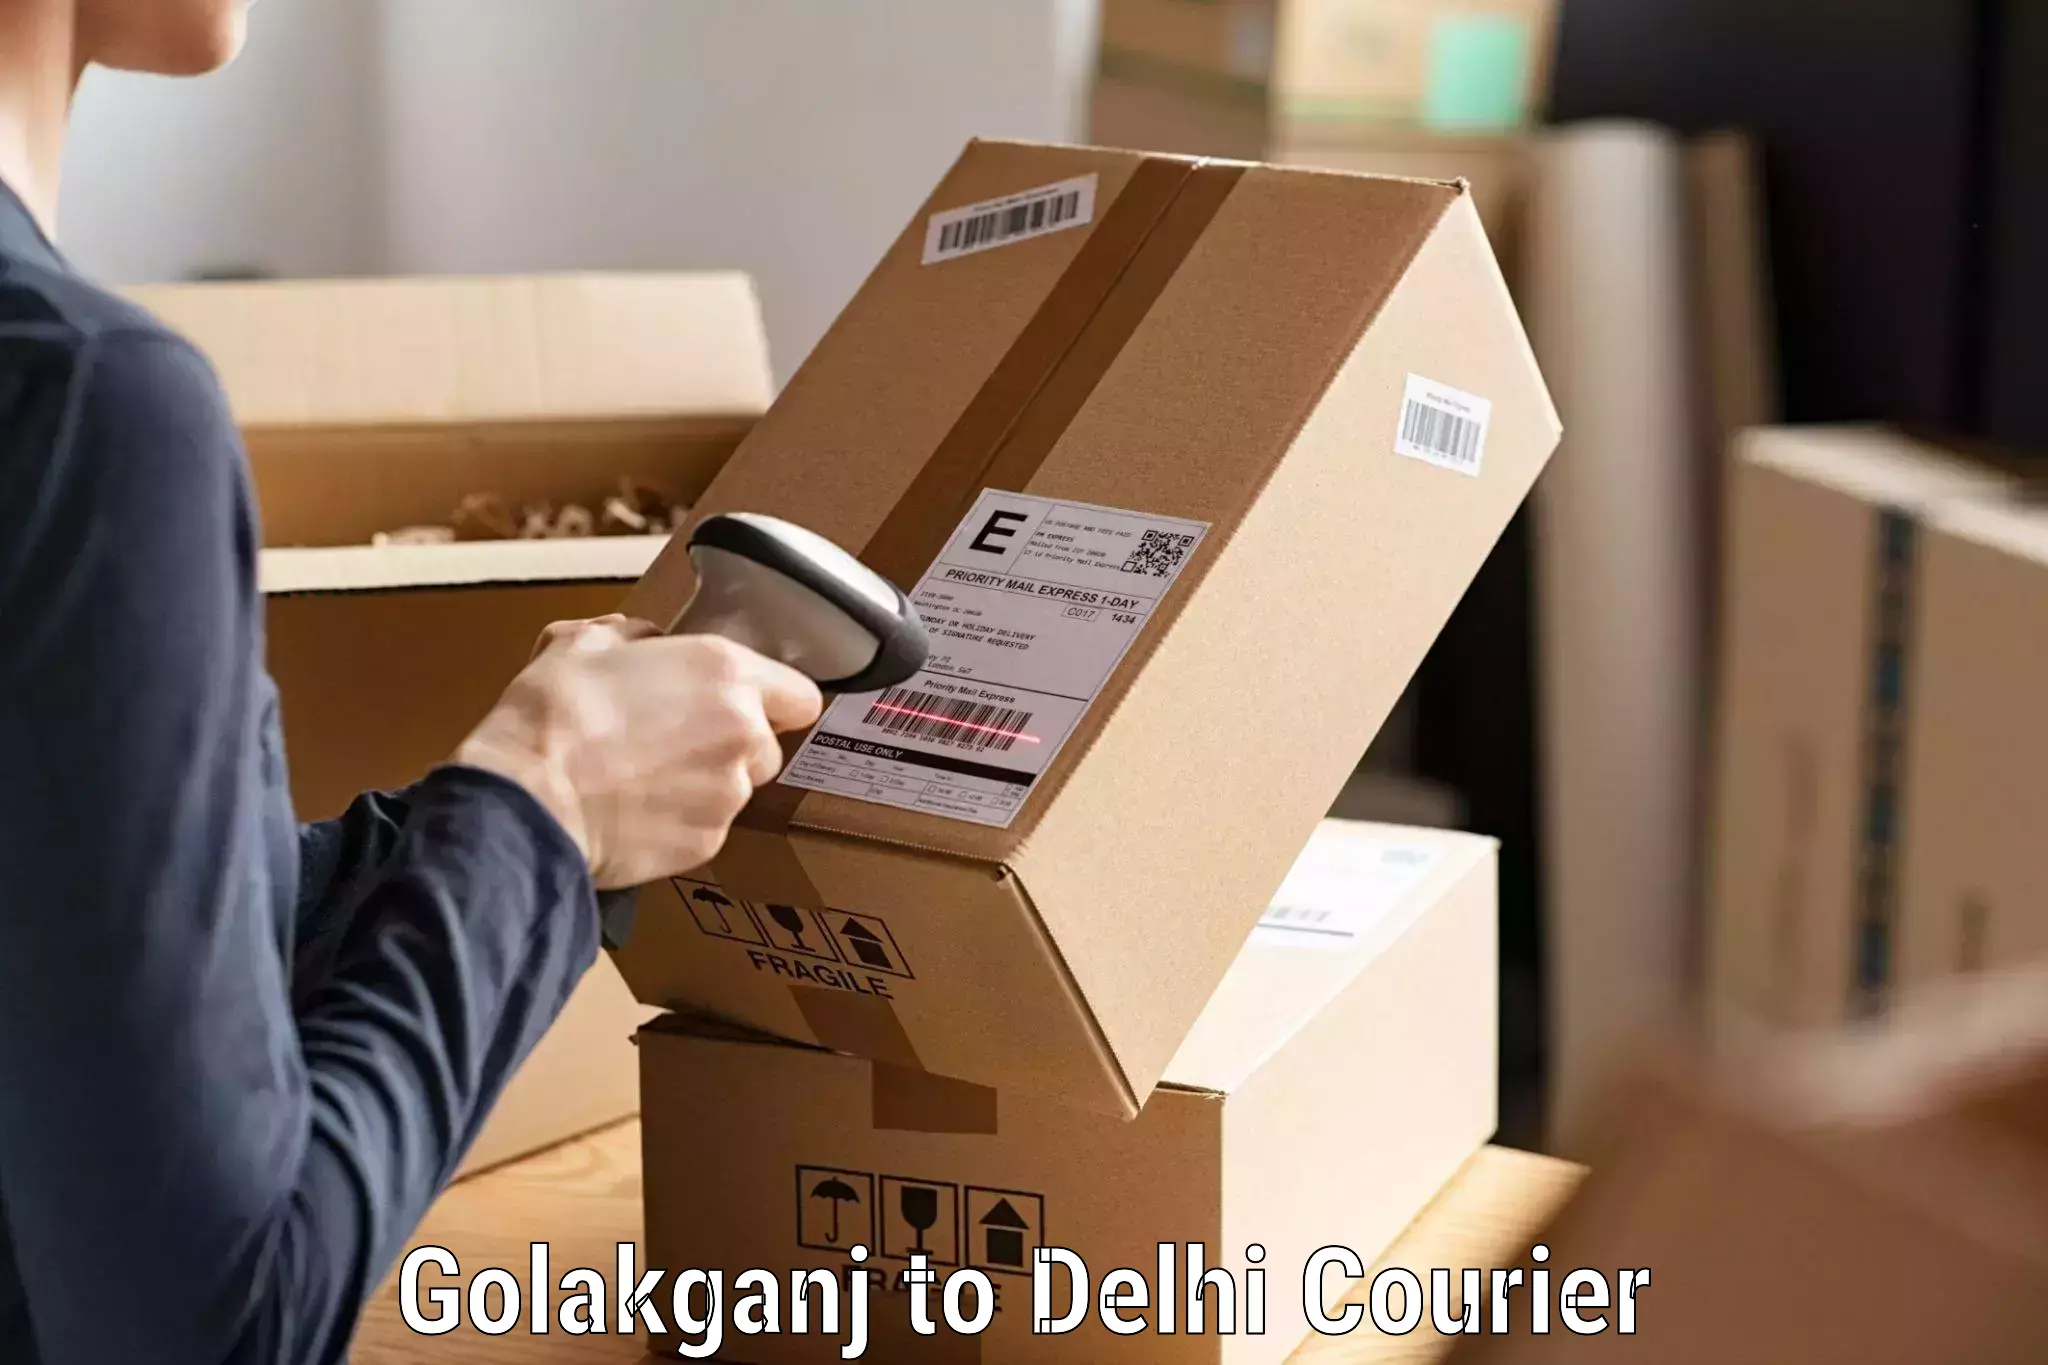 Express postal services Golakganj to Delhi